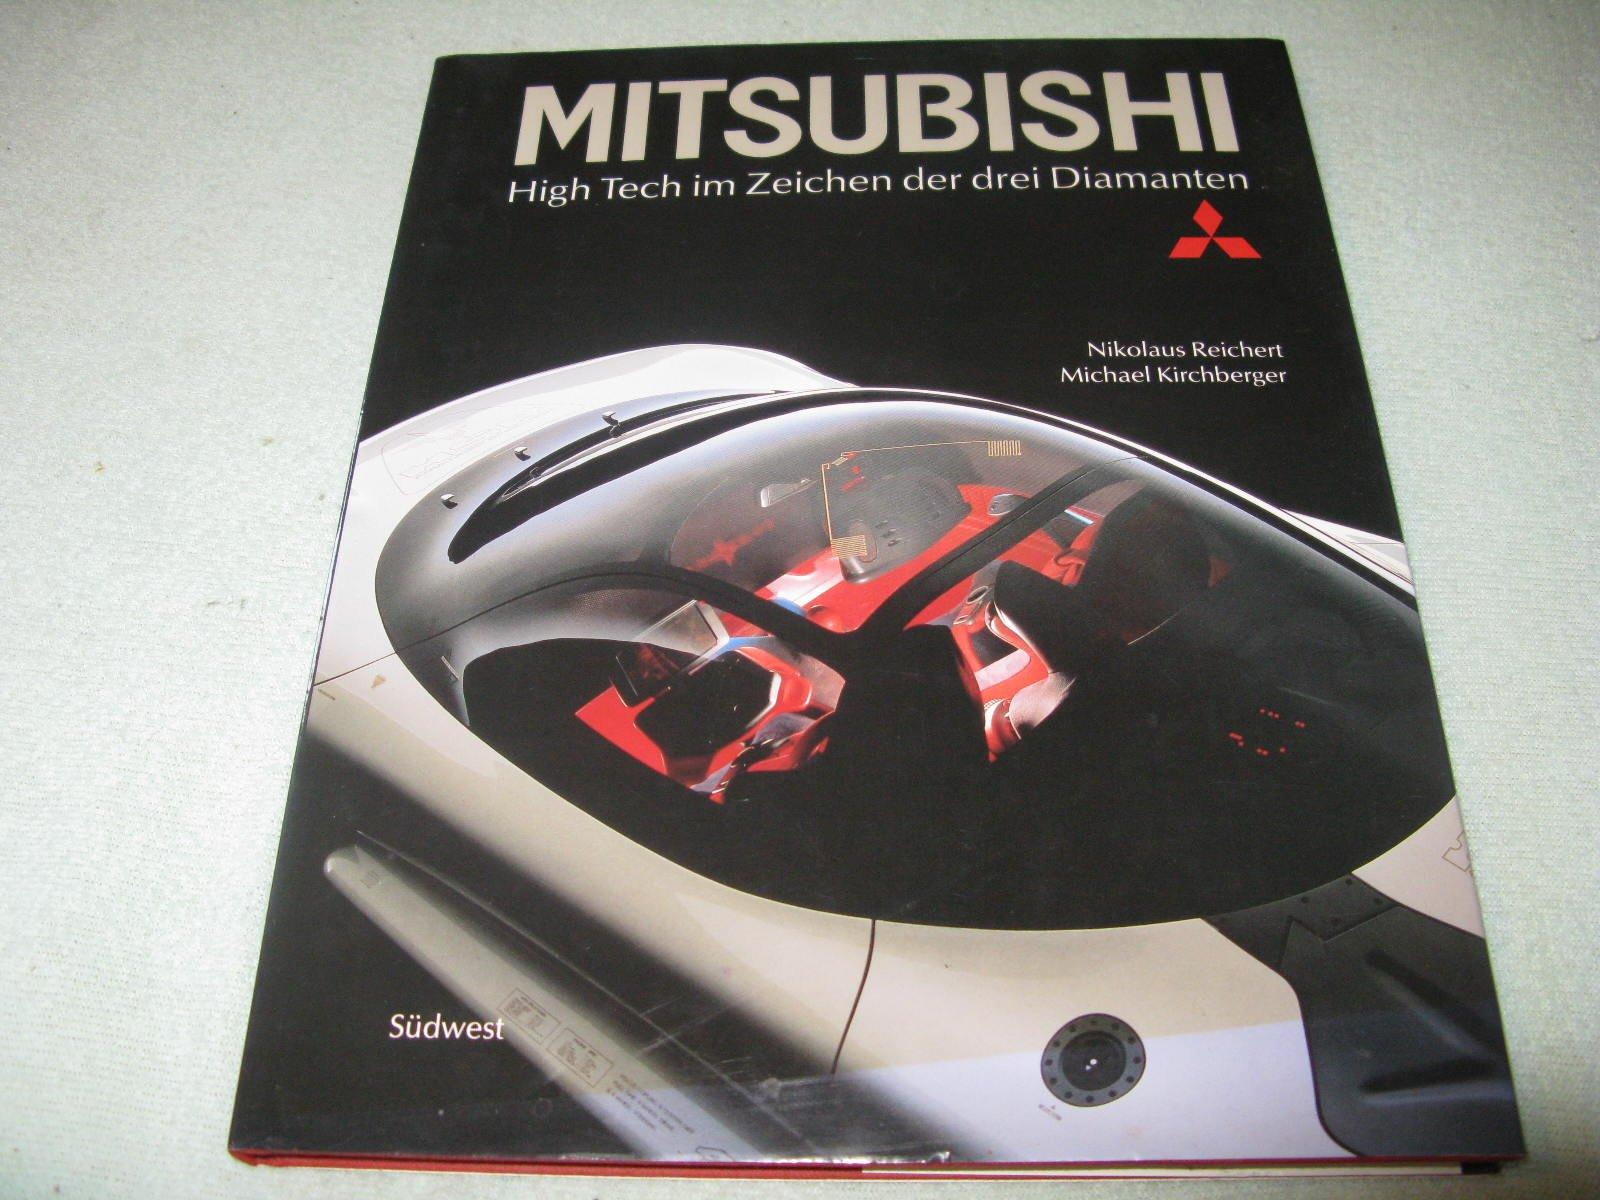 Mitsubishi. High Tech im Zeichen der drei Diamanten